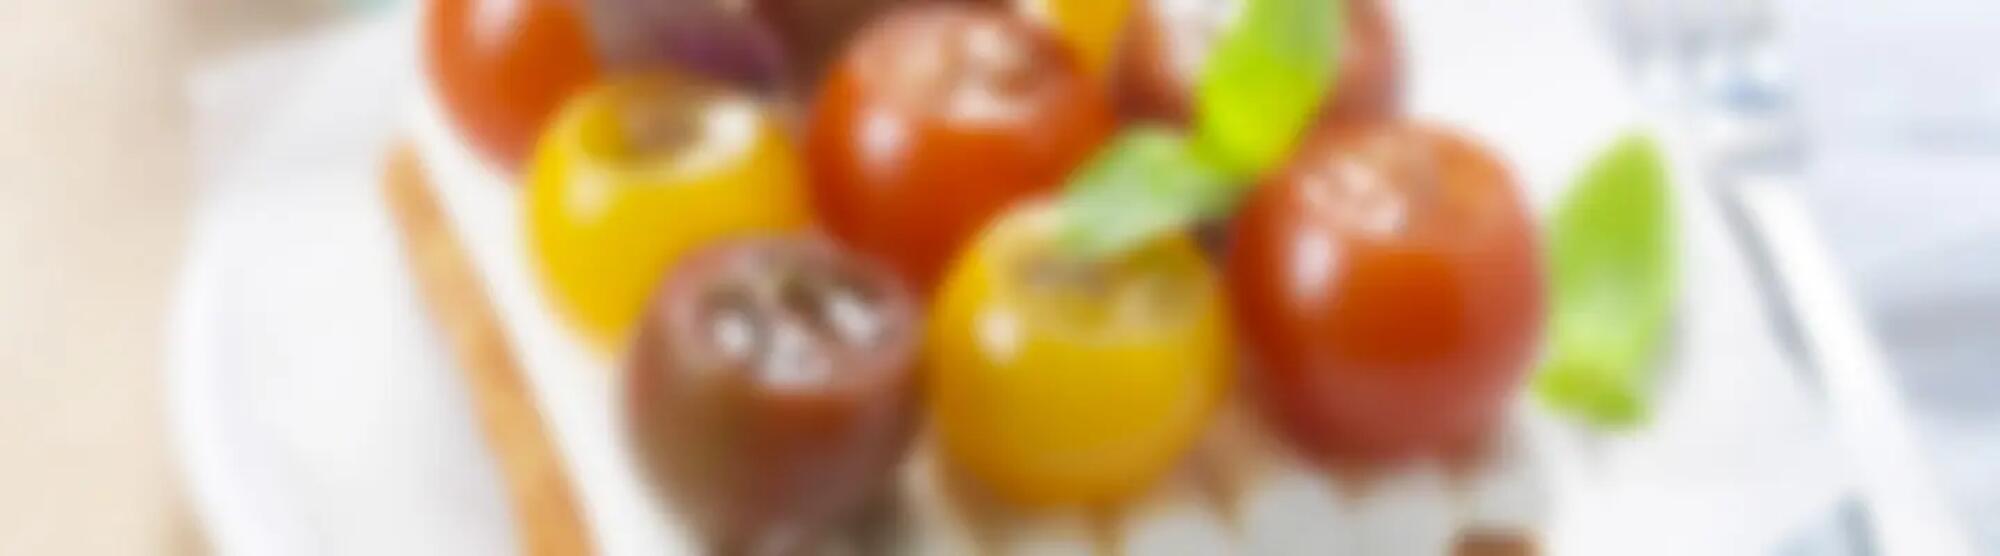 Recette : Tarte aux tomates cerise et fromage frais